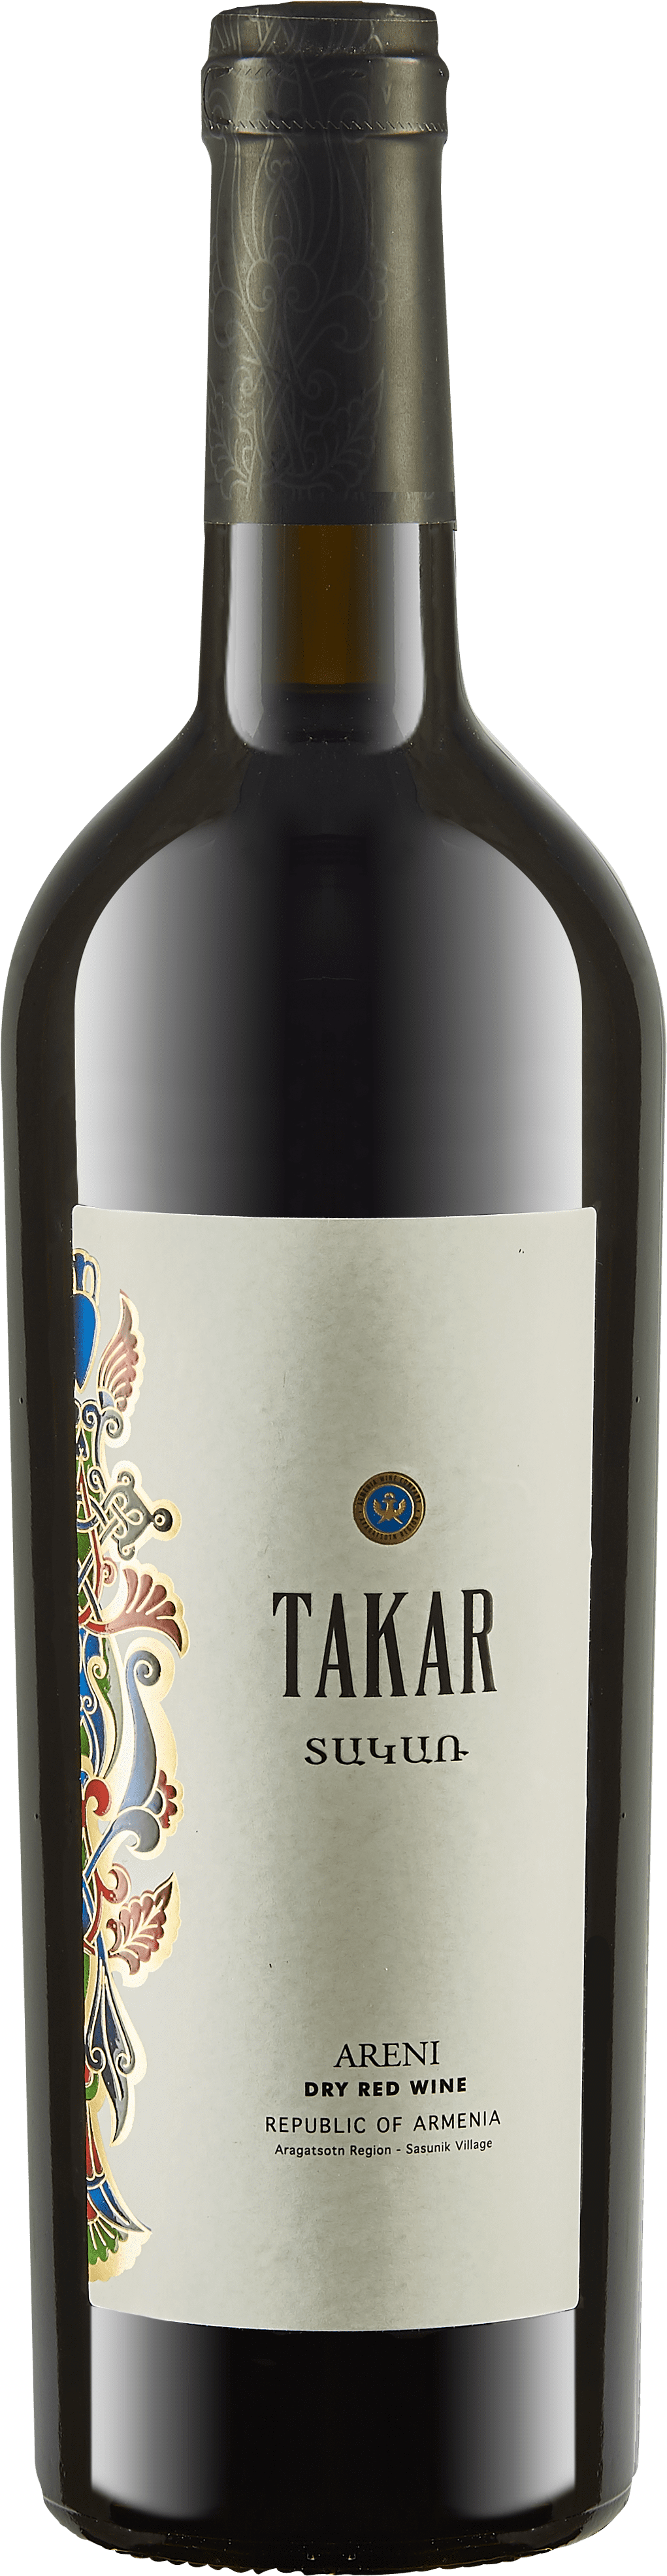 Armenia Wines Company - Takar